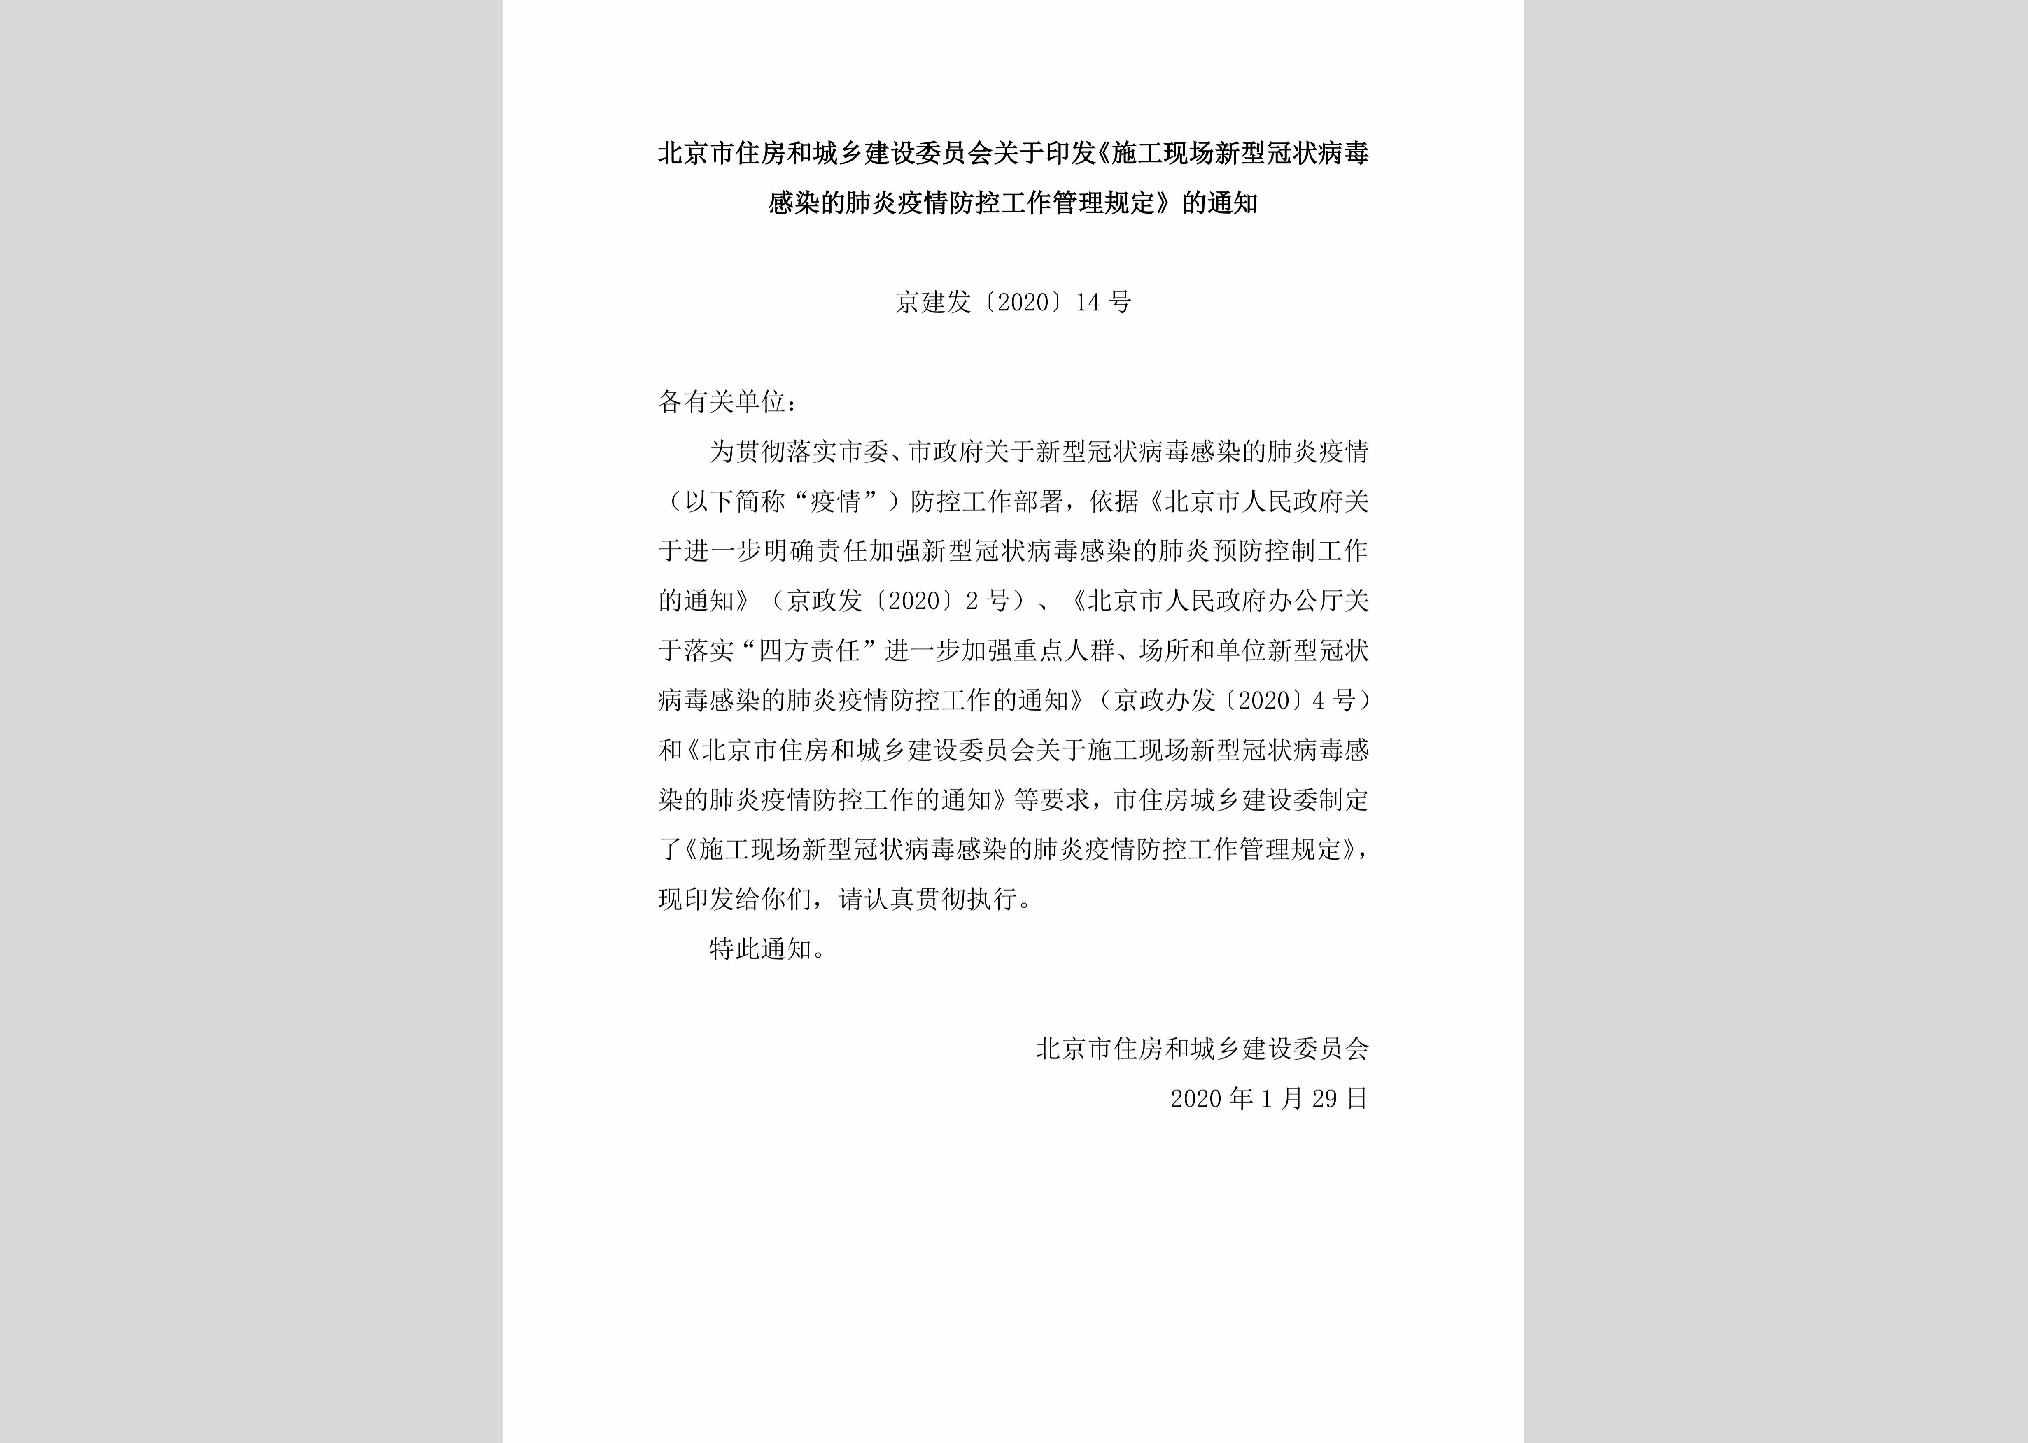 京建发[2020]14号：北京市住房和城乡建设委员会关于印发《施工现场新型冠状病毒感染的肺炎疫情防控工作管理规定》的通知